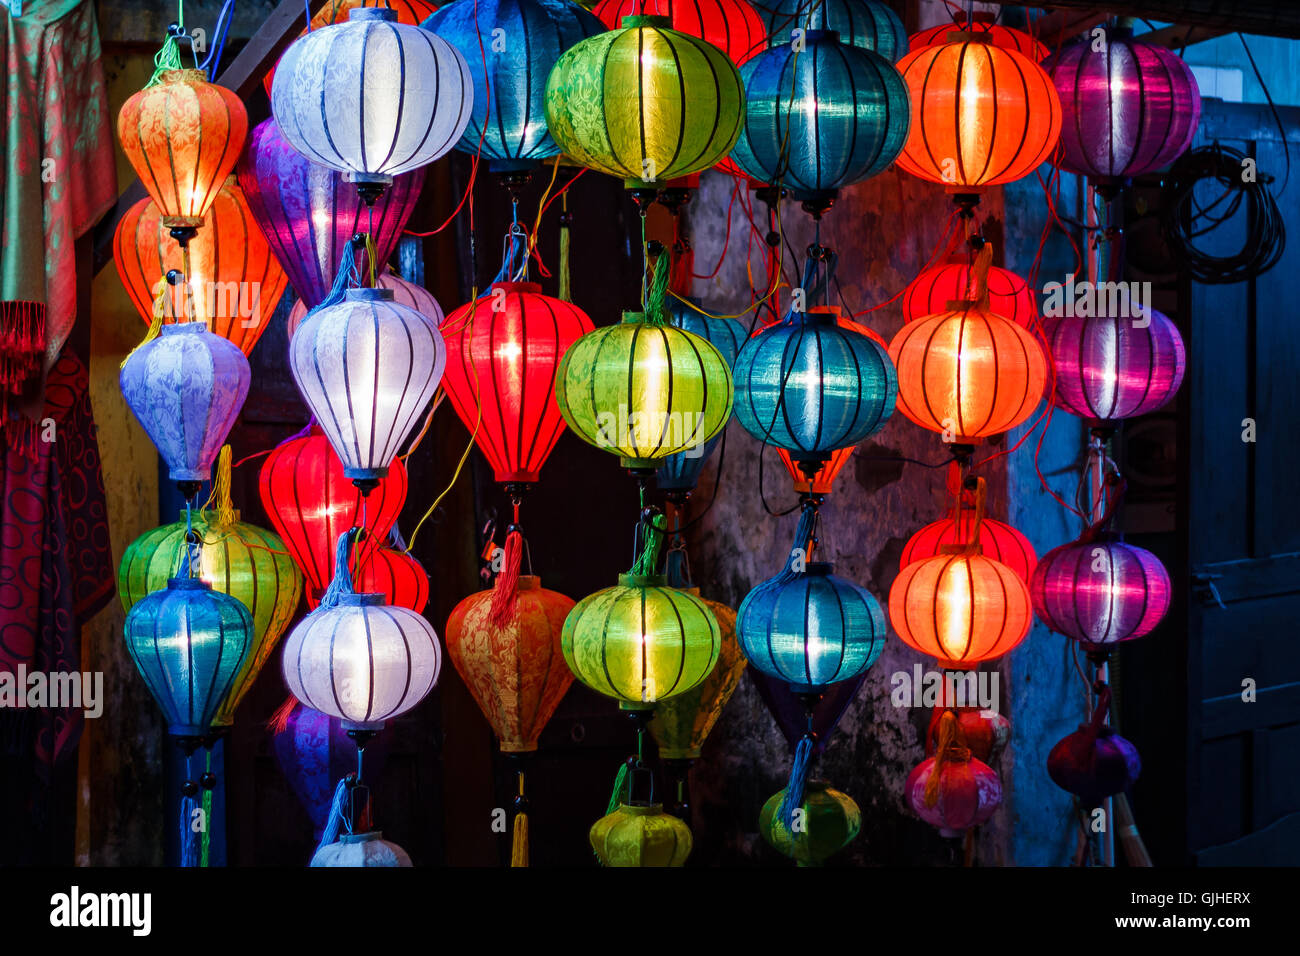 Lanternes multicolores, Hoi An, Vietnam Banque D'Images